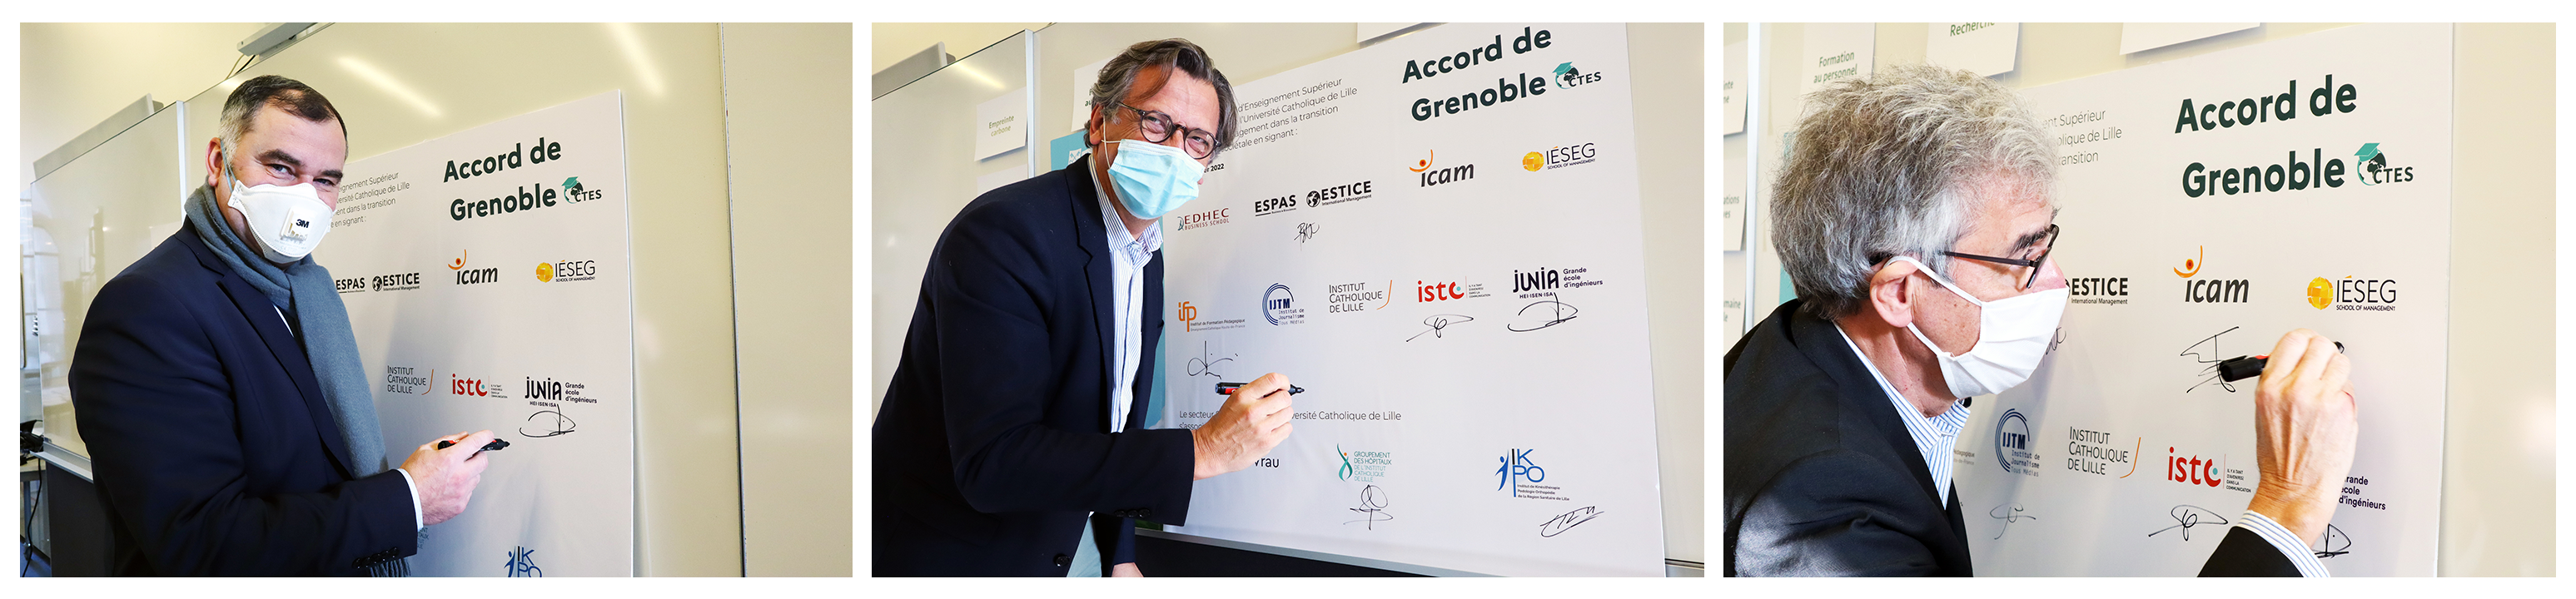 signature accord de Grenoble-2